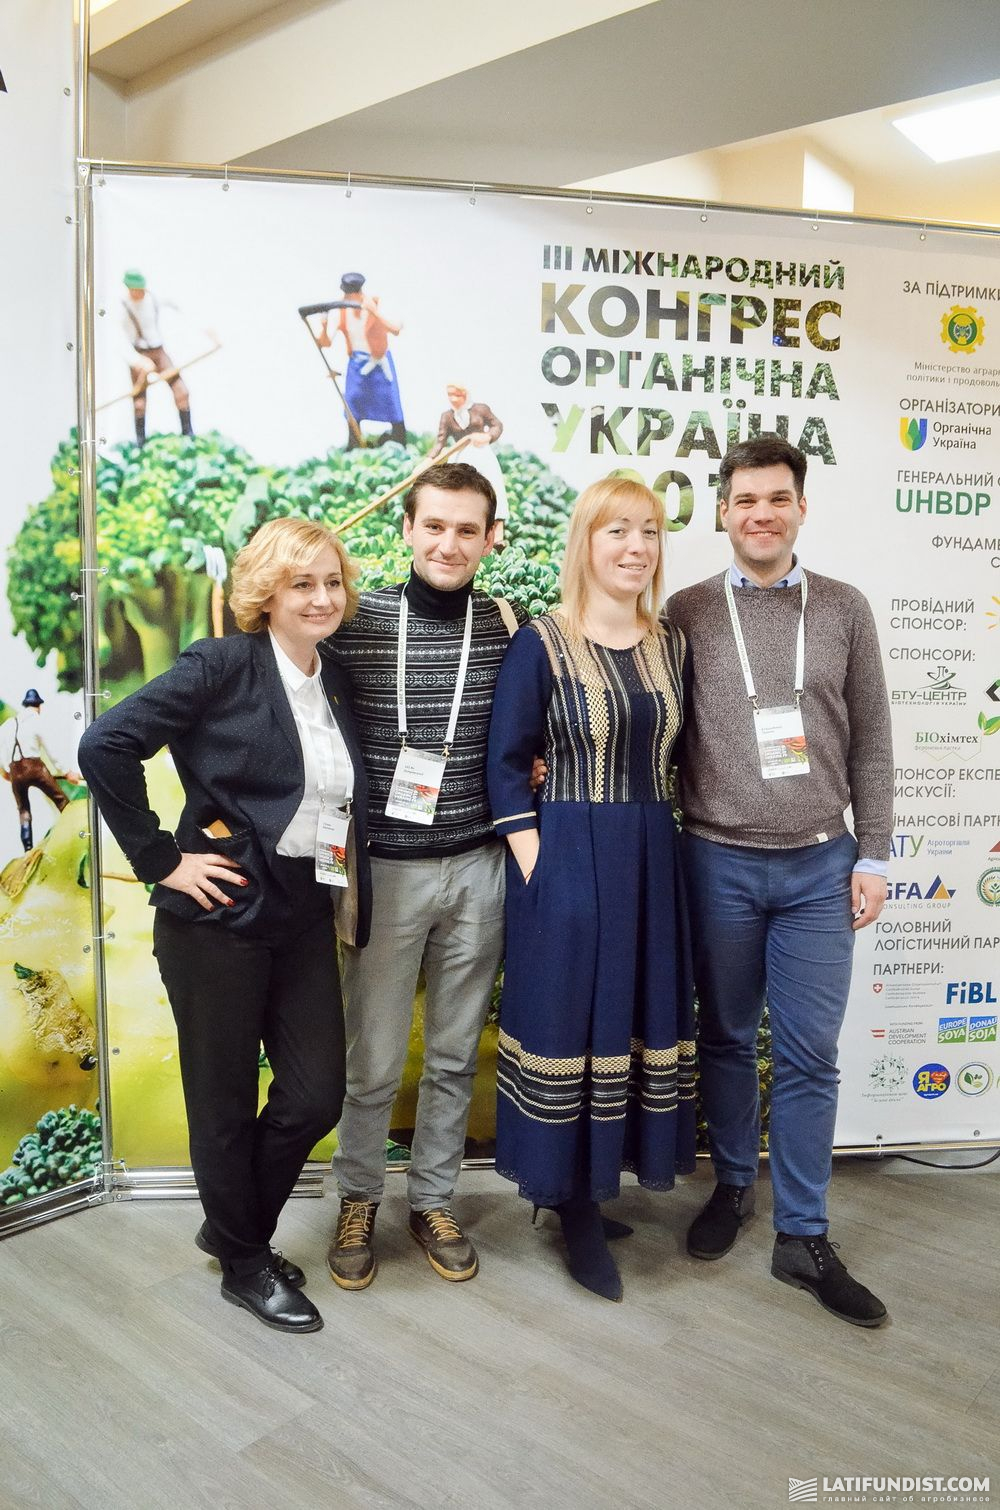 Участники ІІІ Международного конгресса «Органическая Украина 2019»